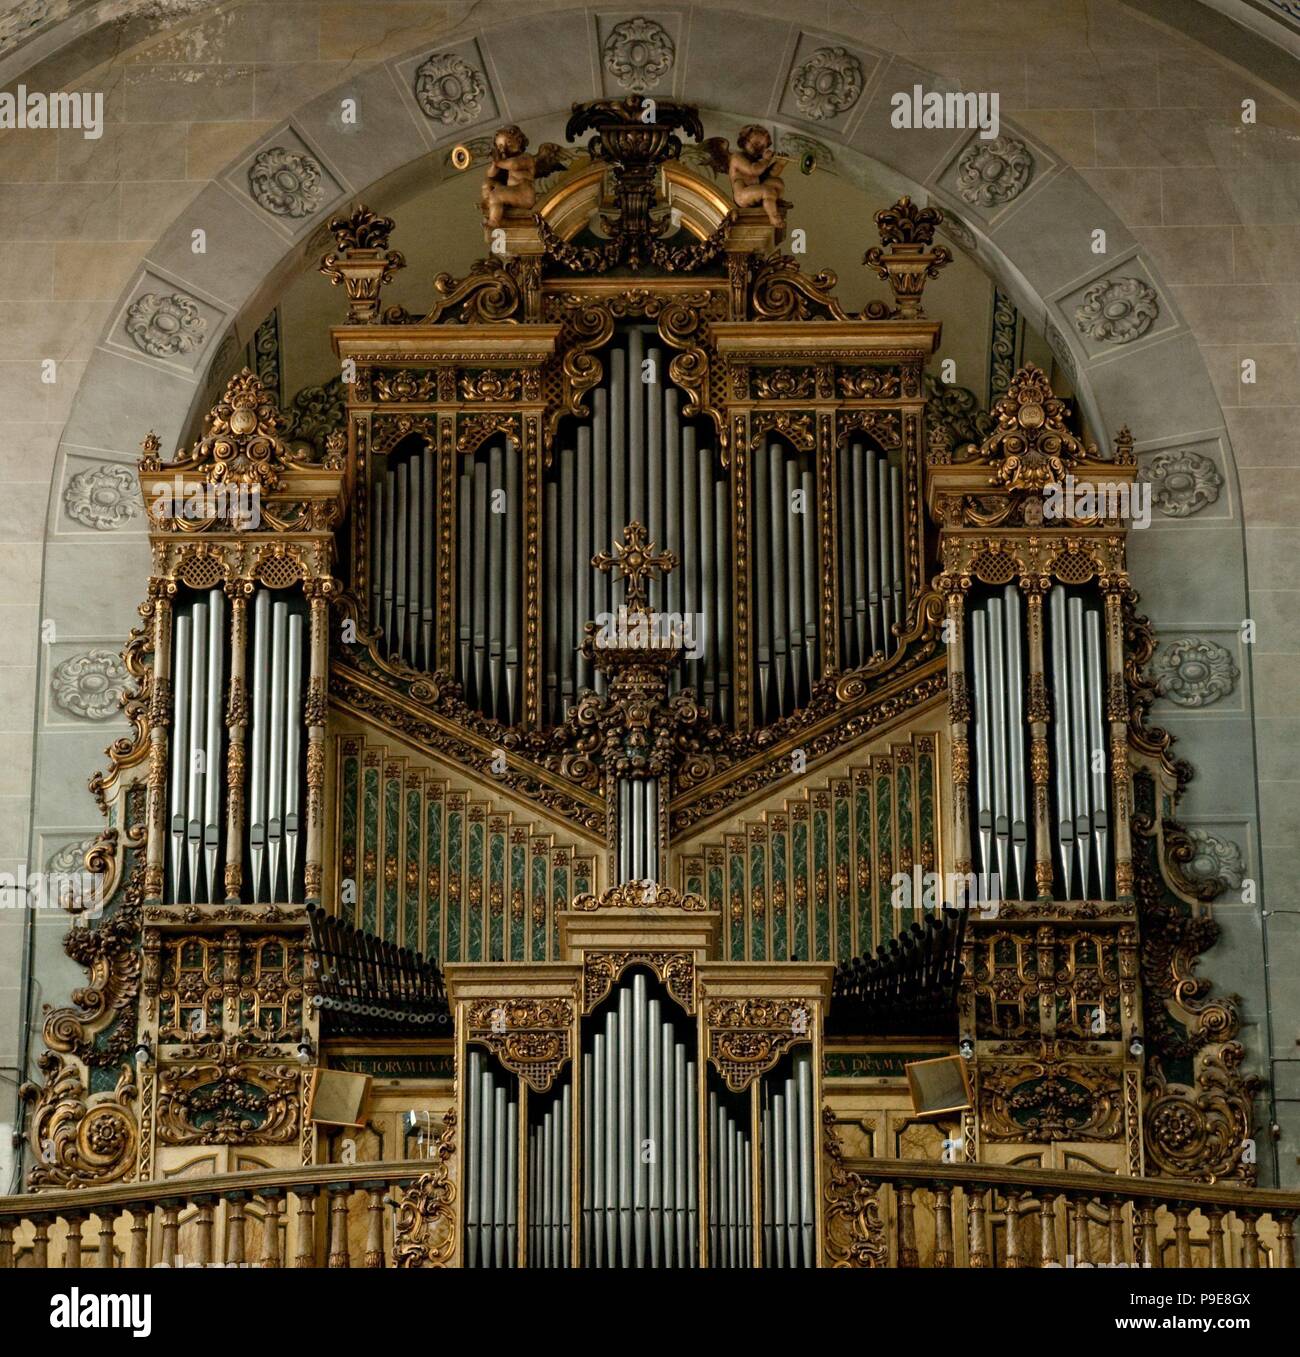 Organ of the church of Santa María de Mataró, 18th-20th century. Stock Photo